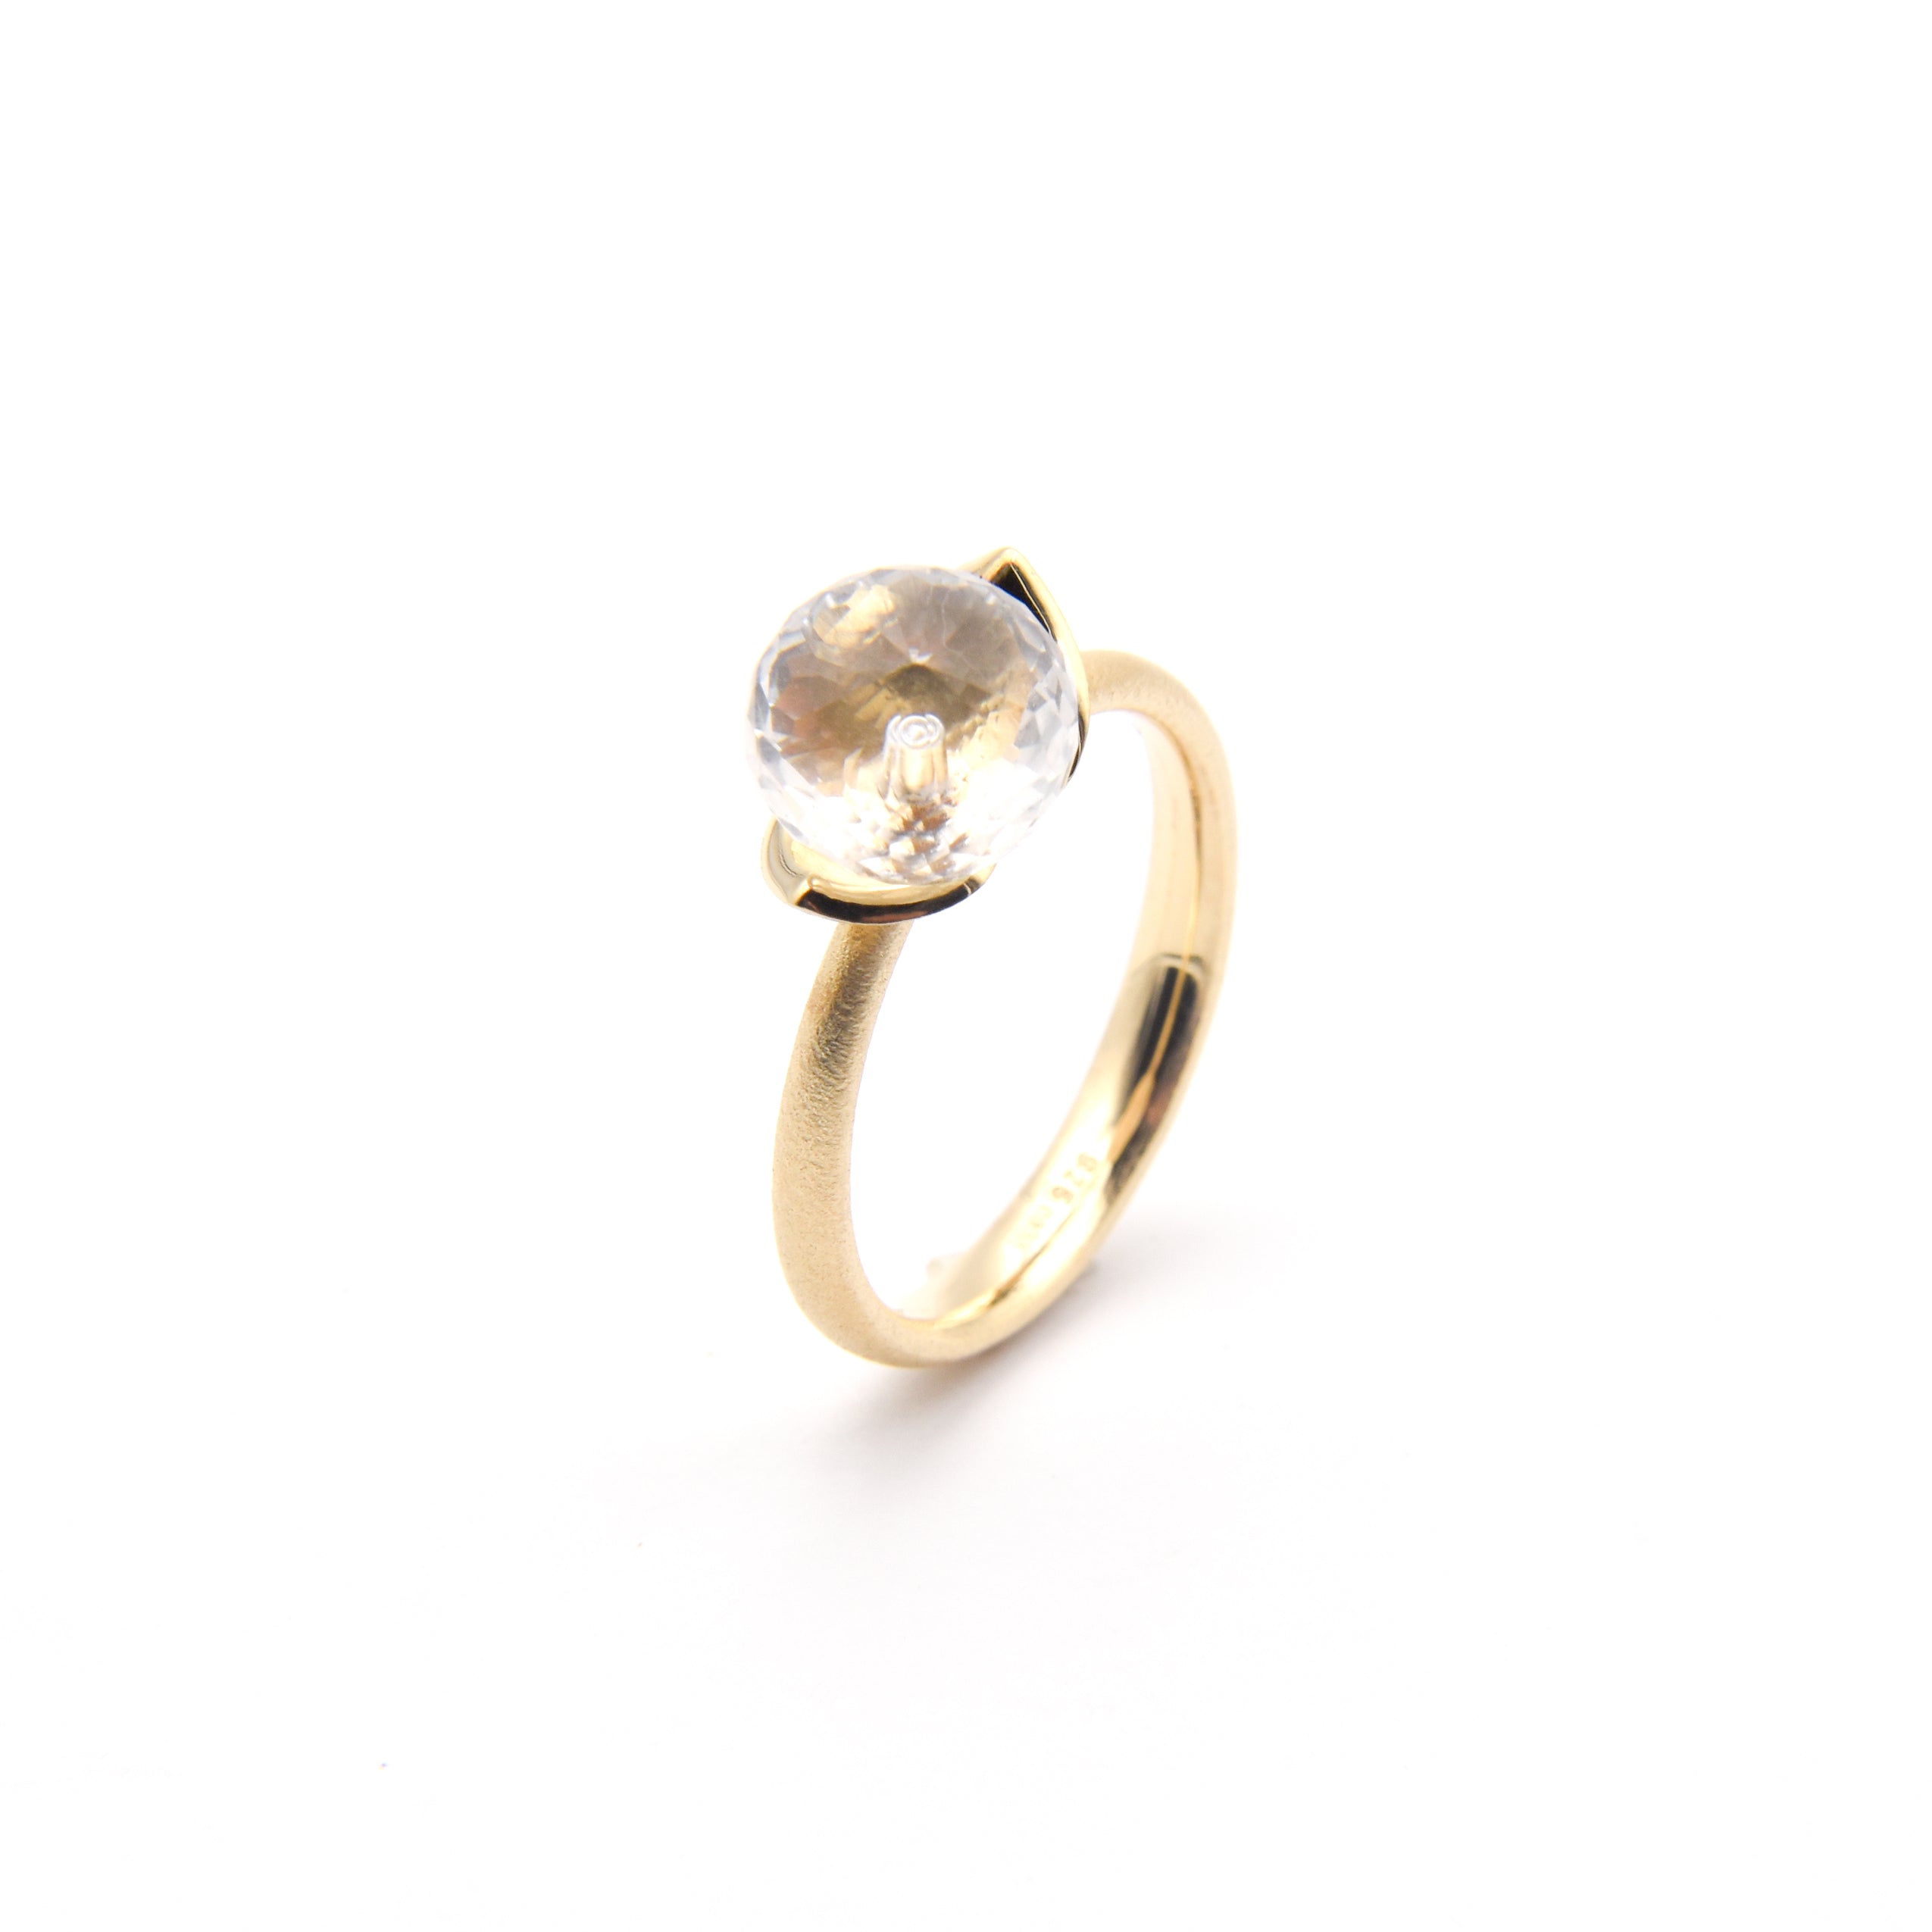 Dolce ring "smal" met bergkristal 925/-